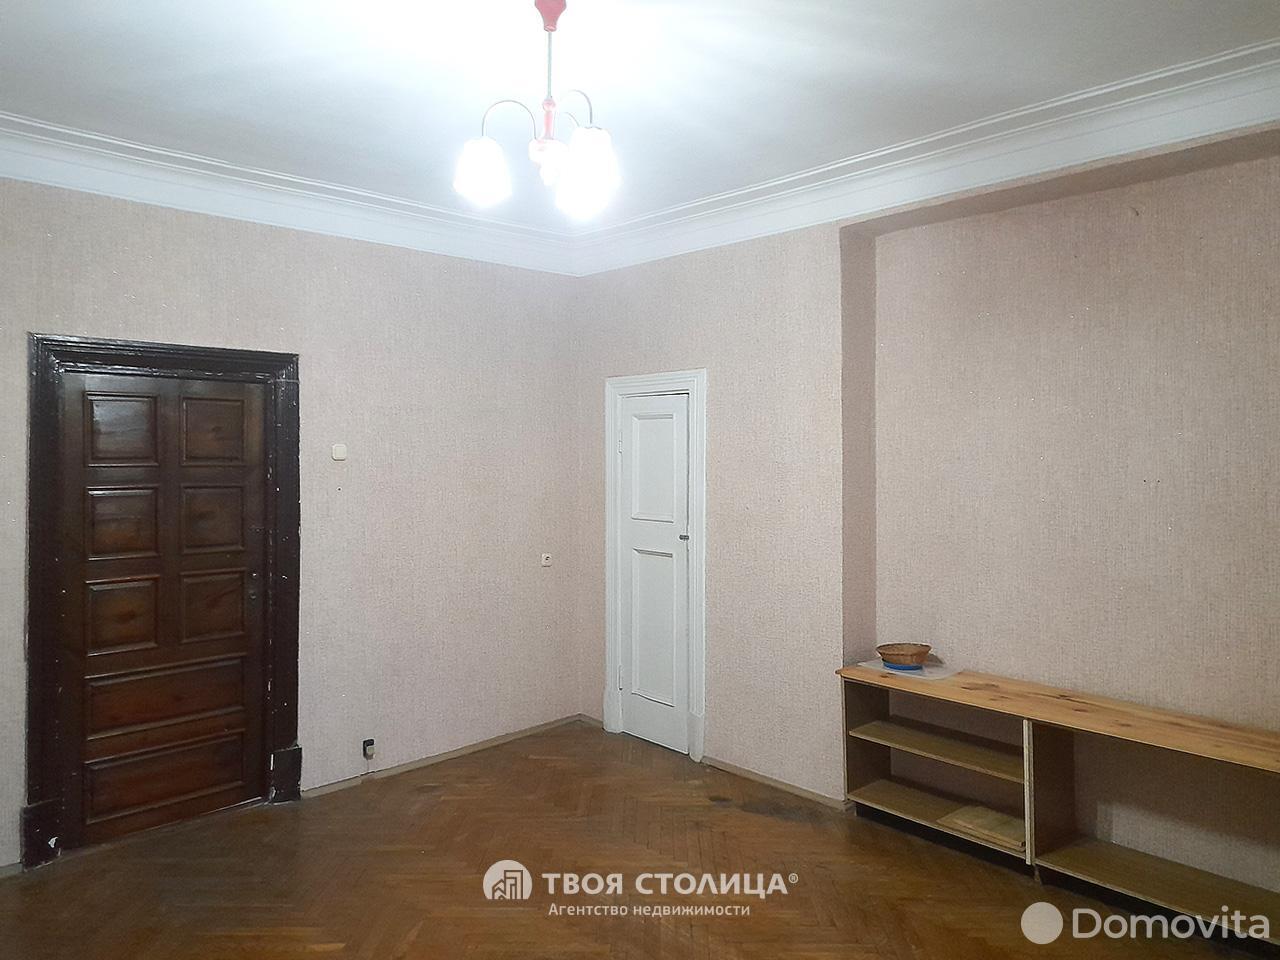 квартира, Минск, пр-т Независимости, д. 103, стоимость продажи 347 224 р.